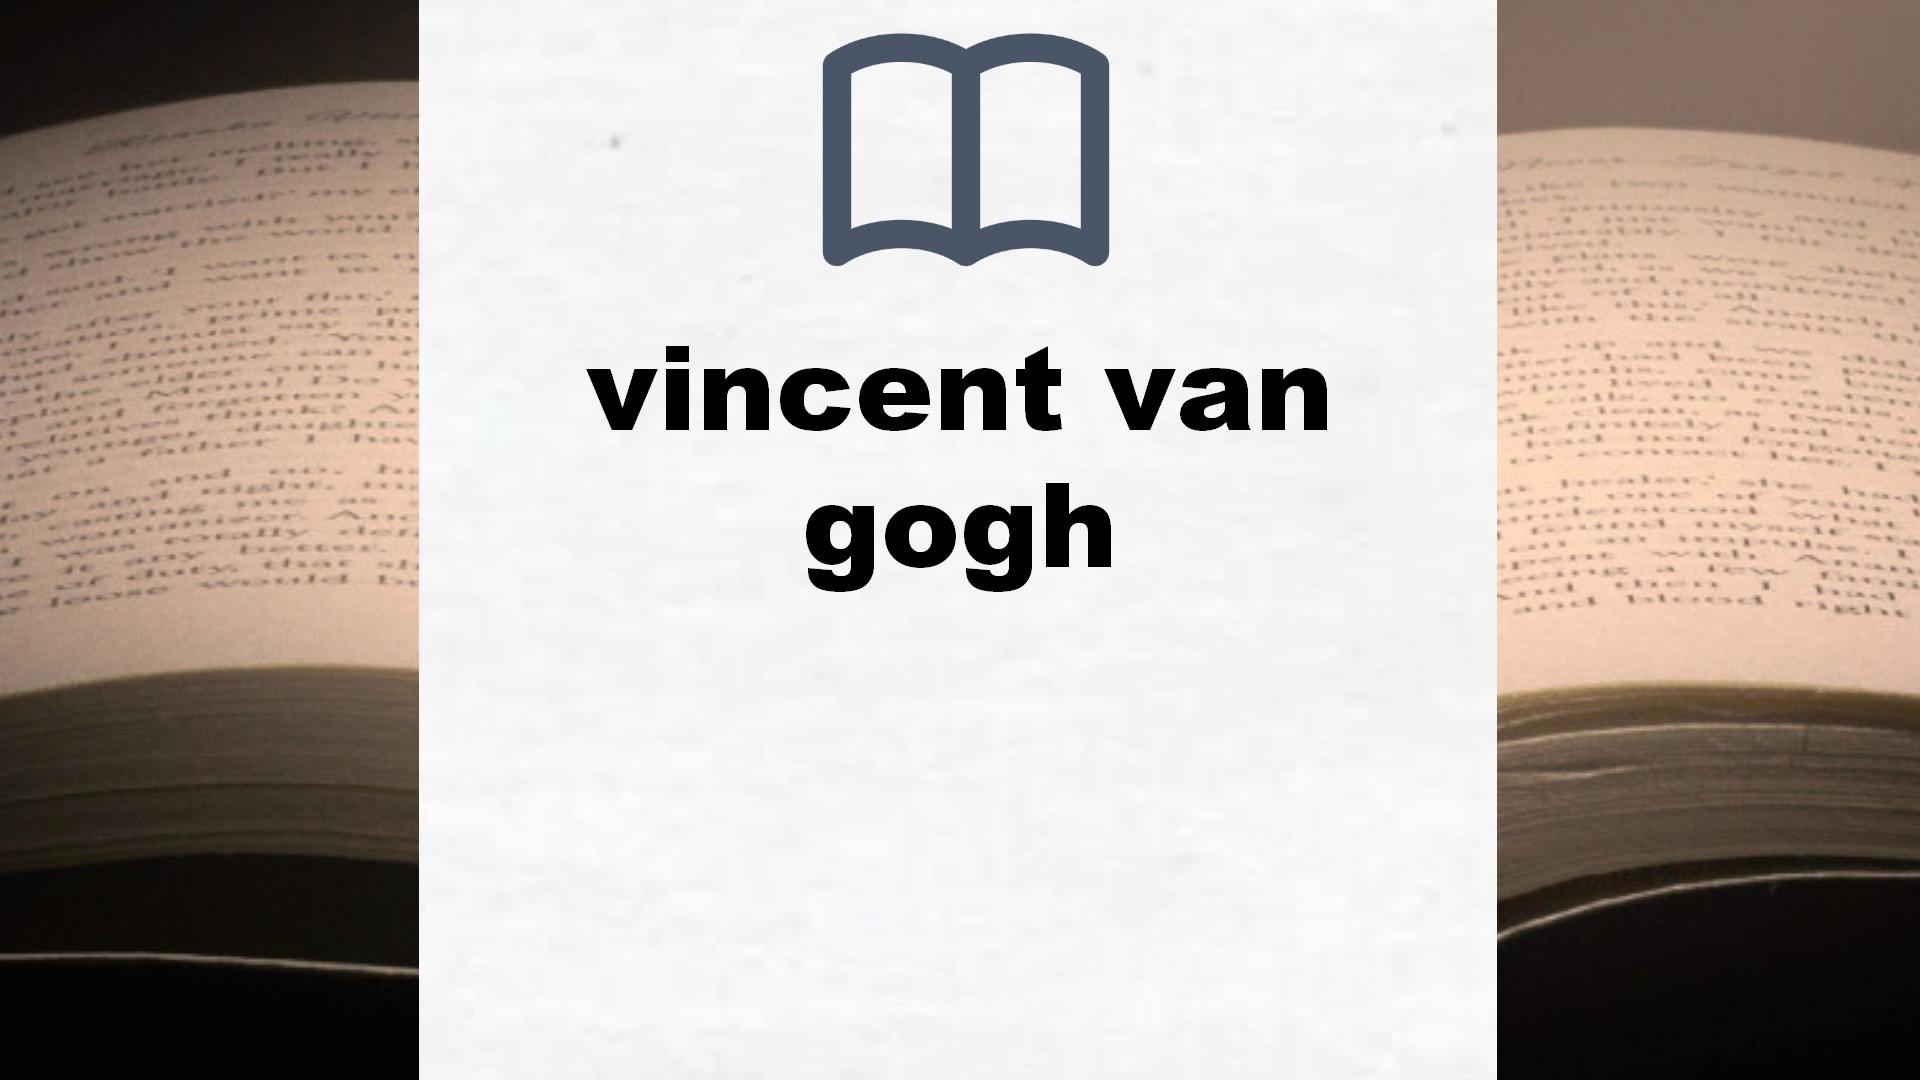 Libros sobre vincent van gogh